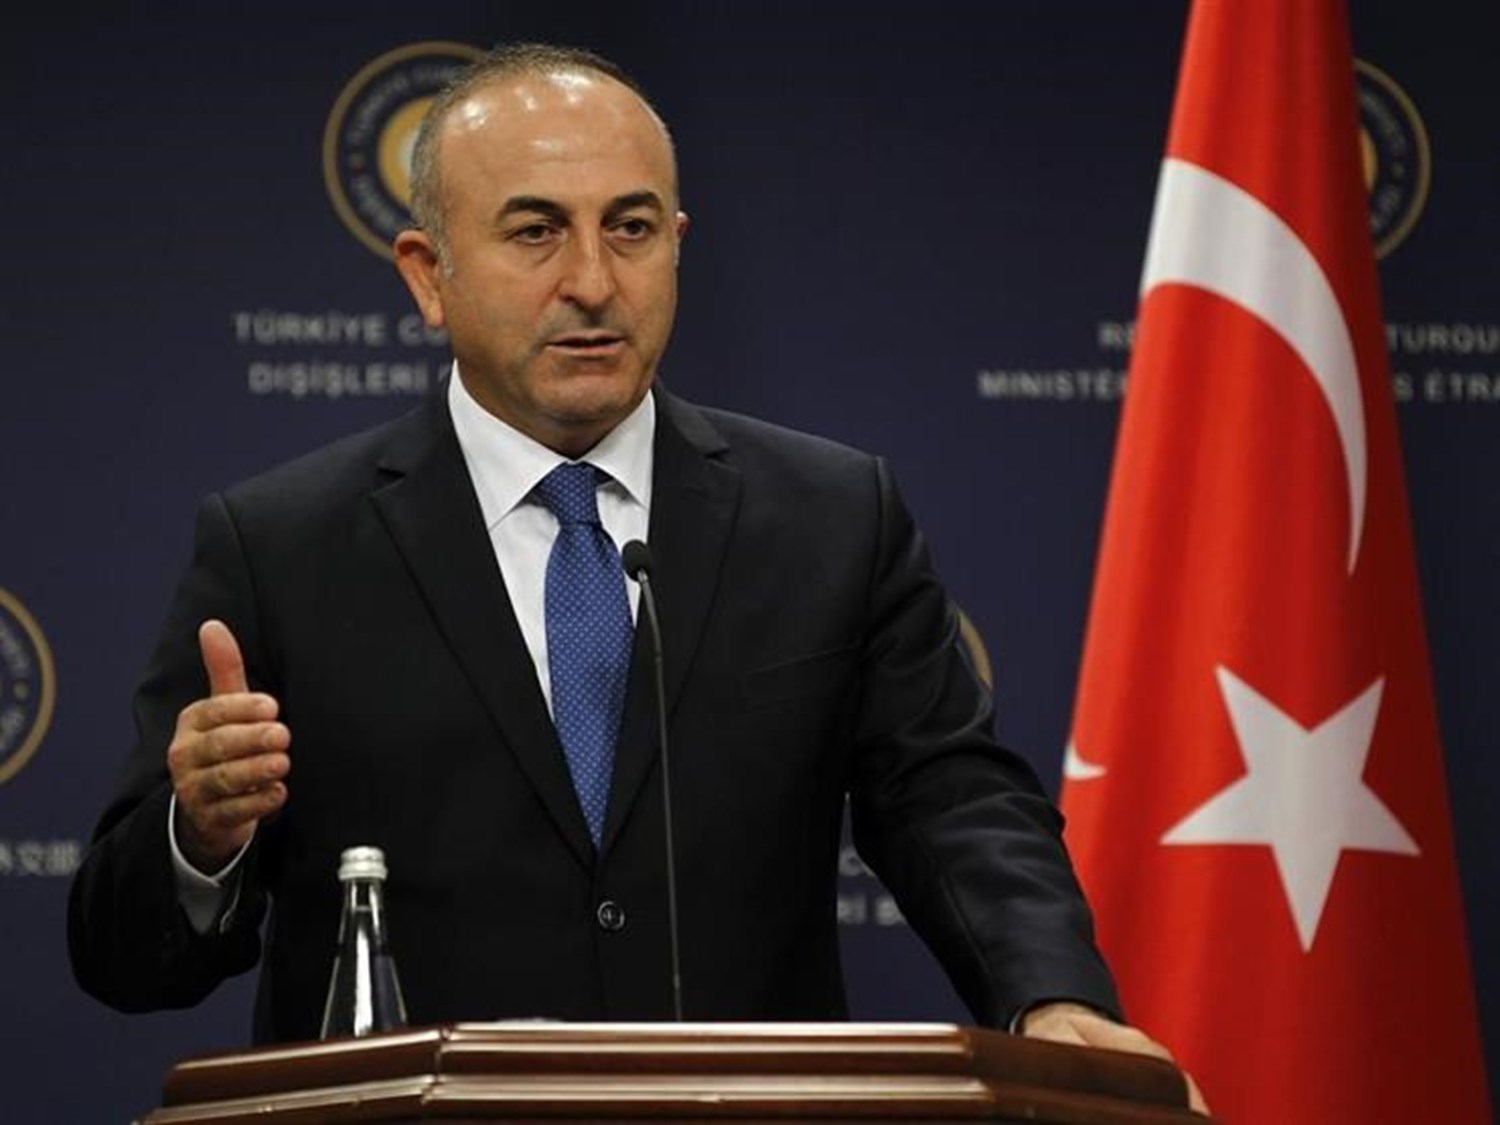 جاويش أوغلو: تركيا قدمت مساعدات طبية إلى 125 بلدًا